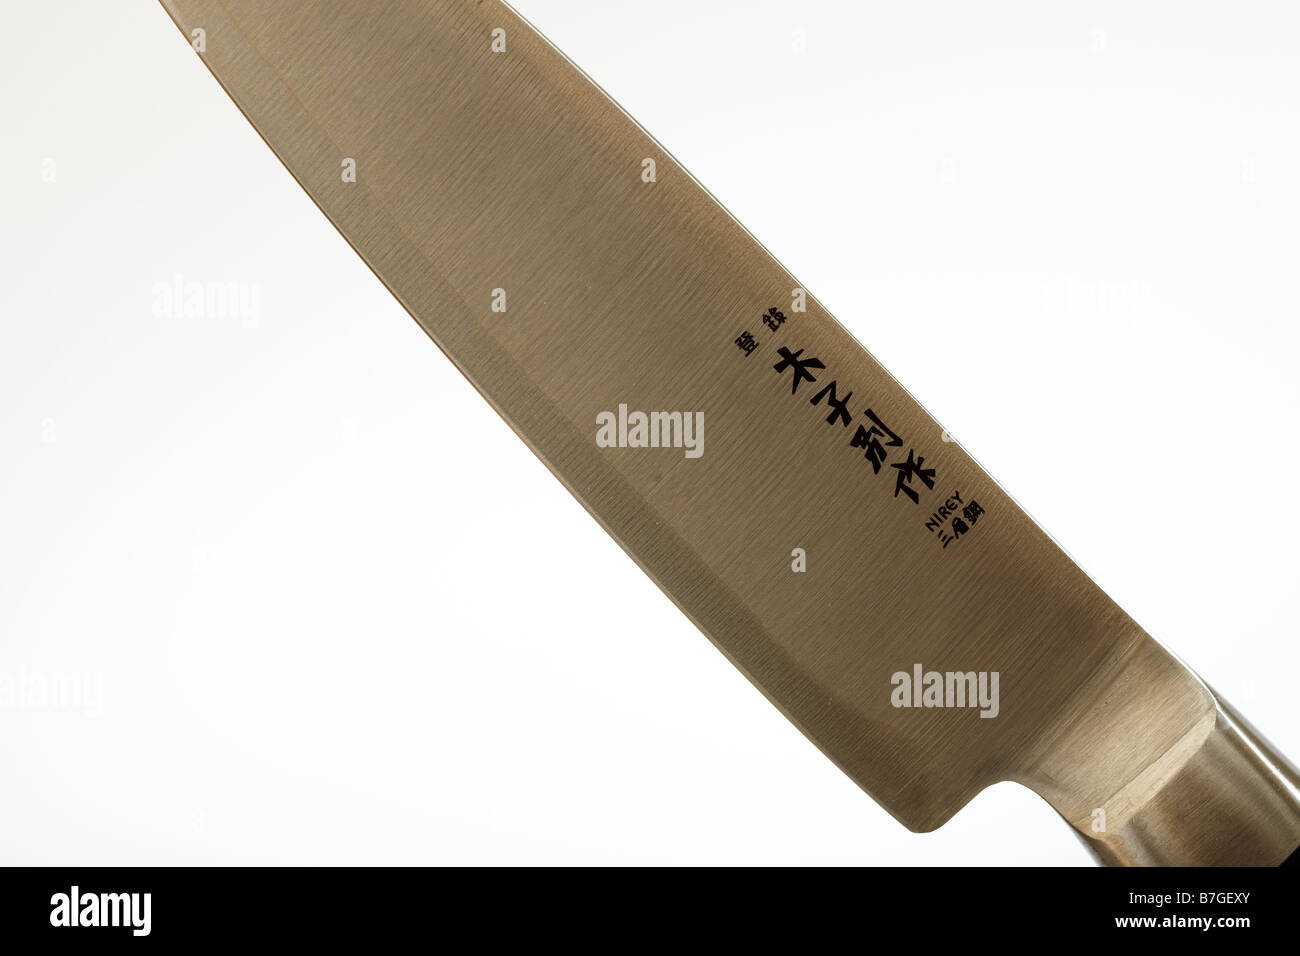 Cuchillo de cocina japonesa Foto de stock